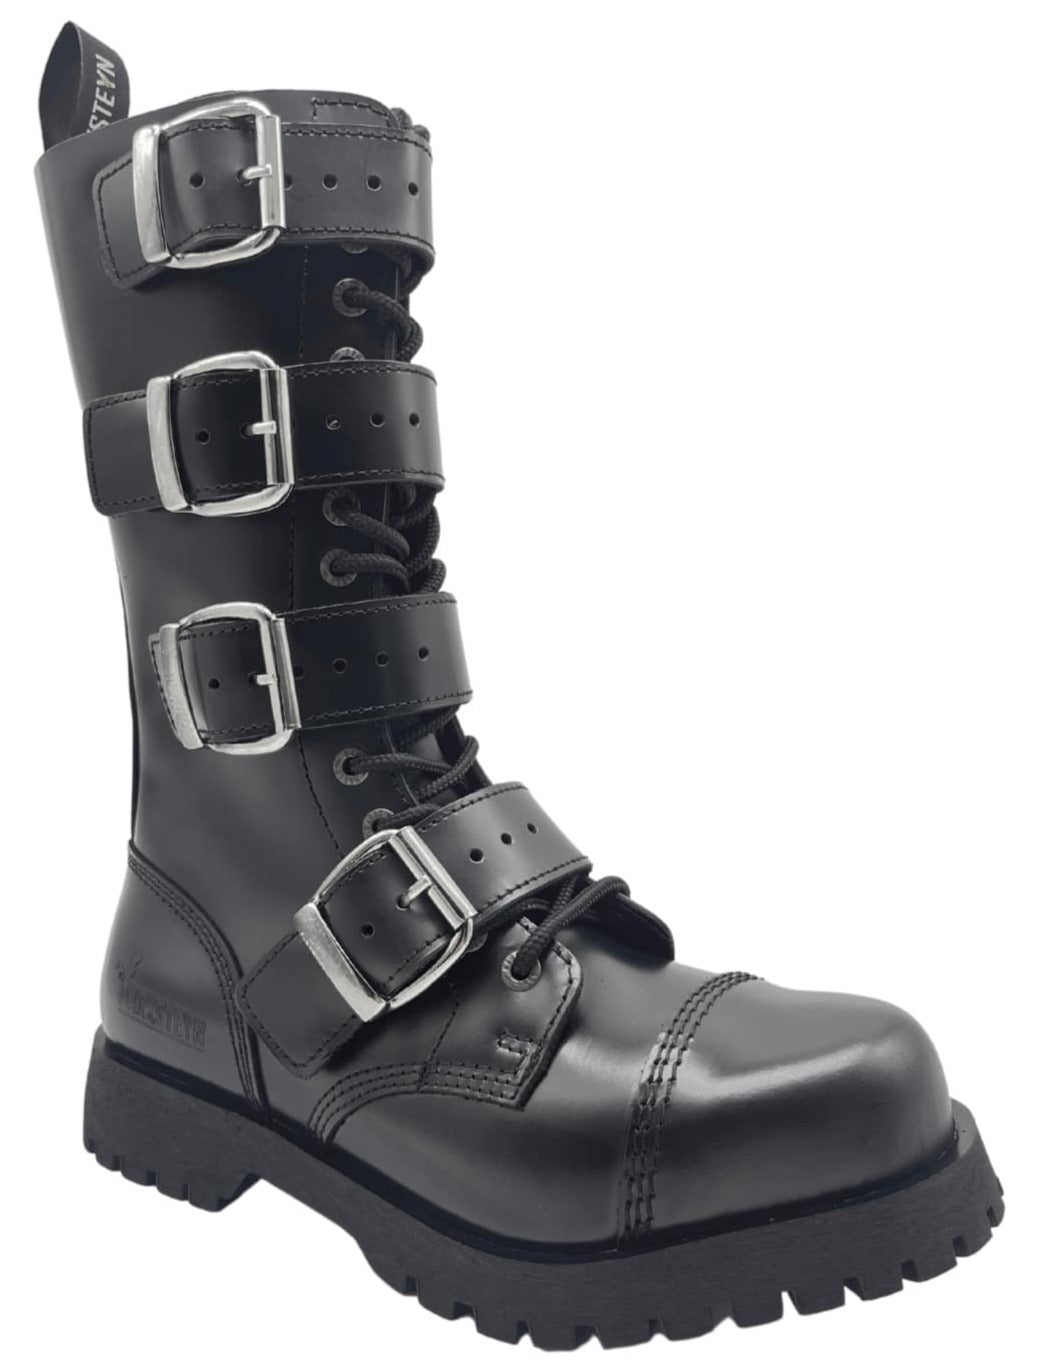 Darksteyn Schuhe 14 Eye 4 Buckle Ranger Premium Boots Black Springerstiefel